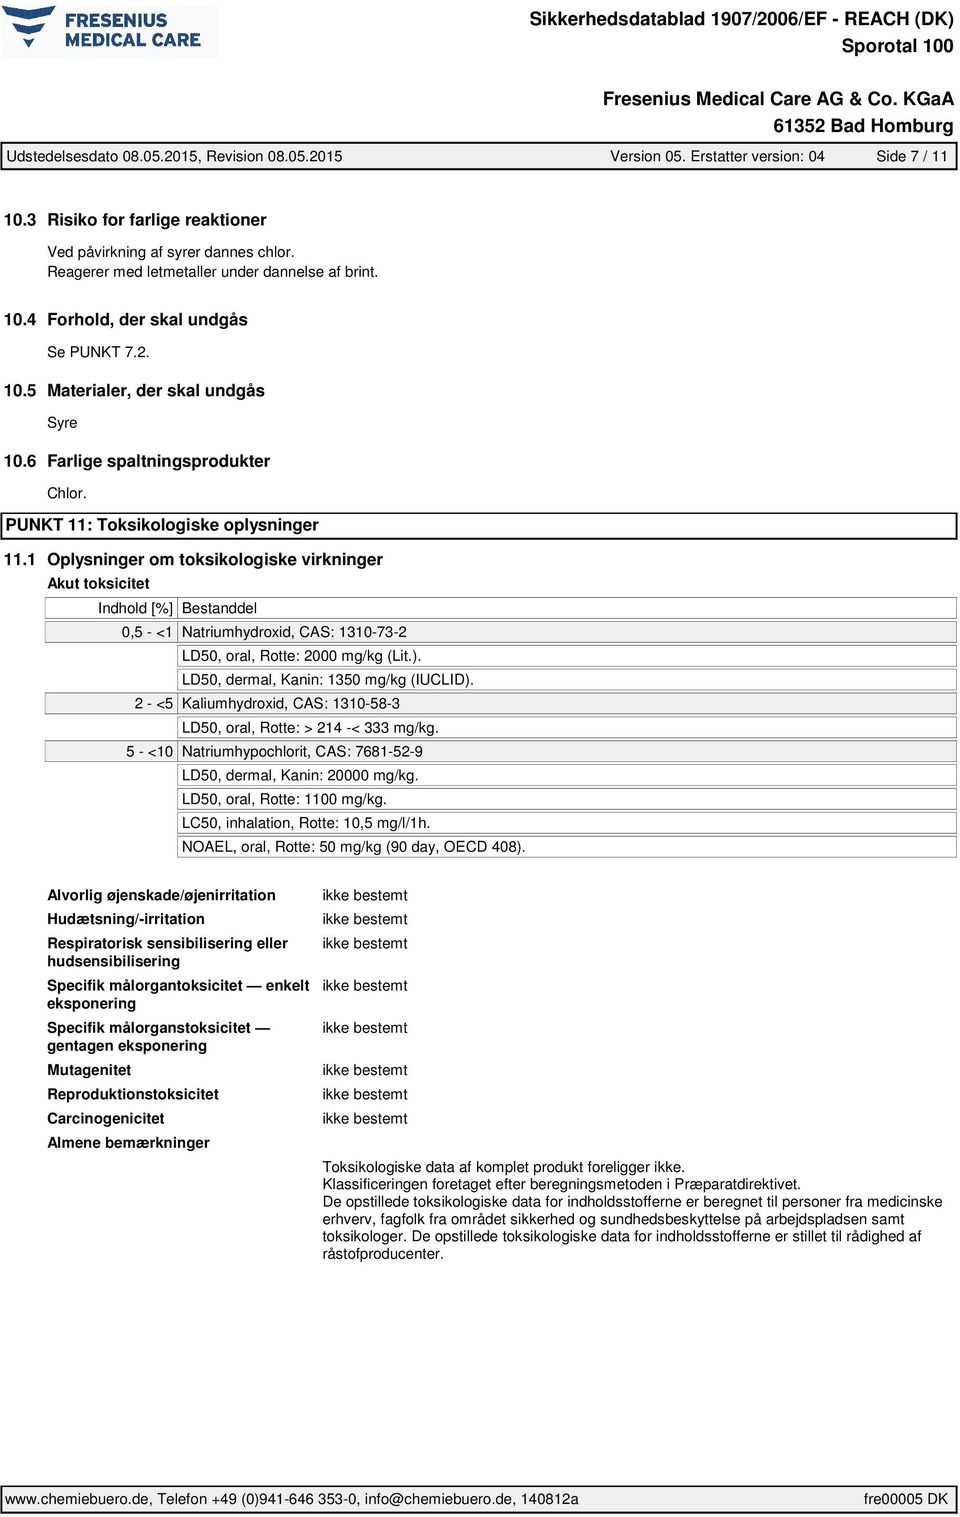 PUNKT 11: Toksikologiske oplysninger 11.1 Oplysninger om toksikologiske virkninger Akut toksicitet 0,5 - <1 Natriumhydroxid, CAS: 1310-73-2 LD50, oral, Rotte: 2000 mg/kg (Lit.).